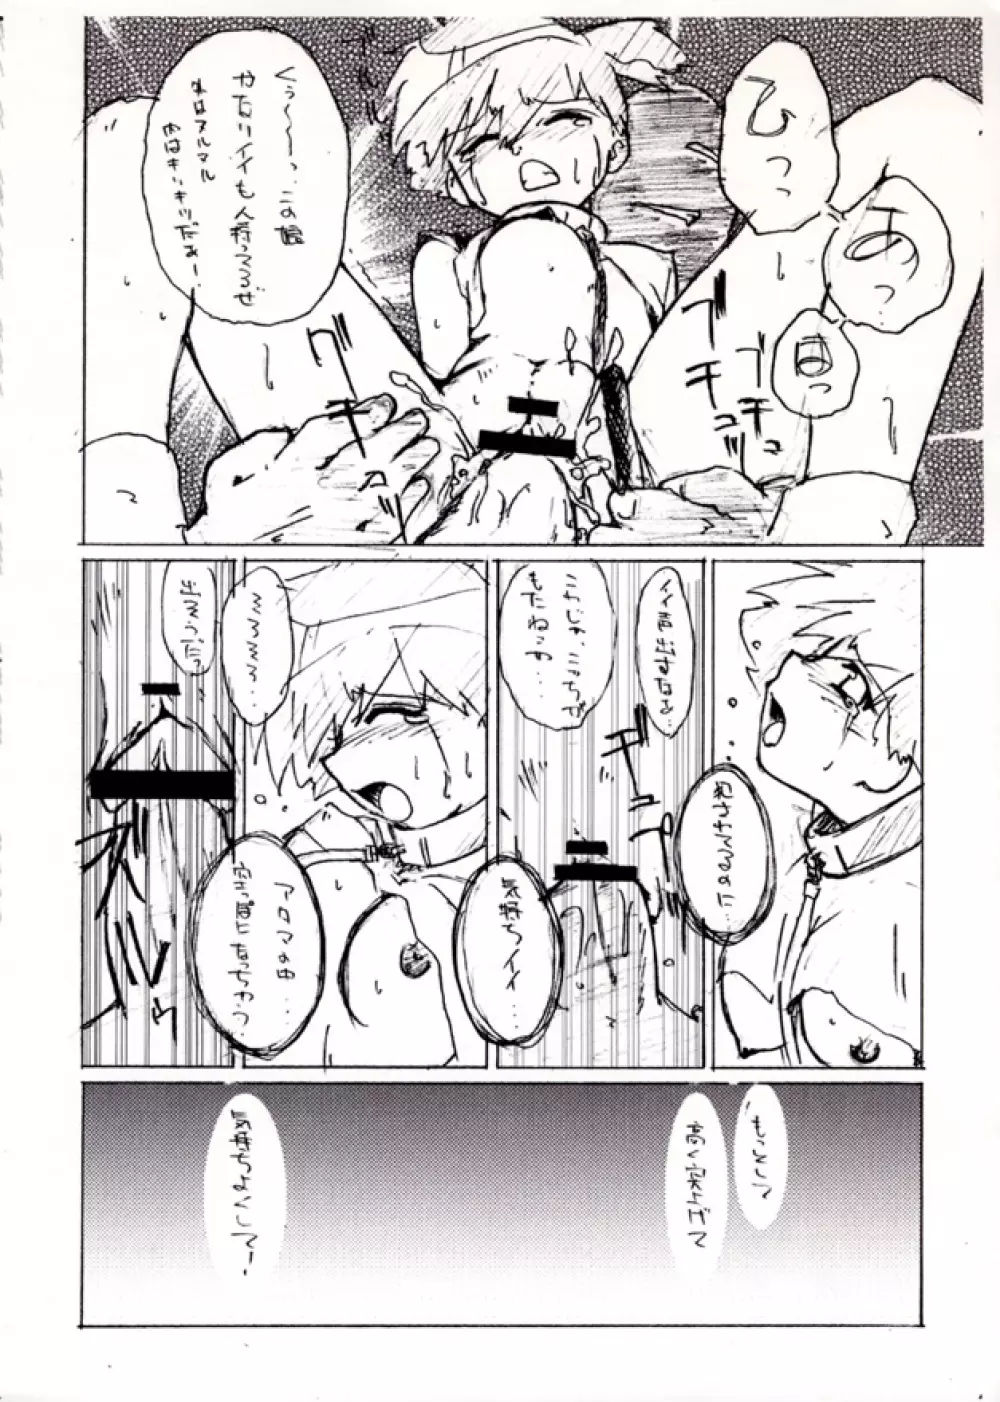 KASUMIX XPLOSION Kasumi Comic part5 20ページ